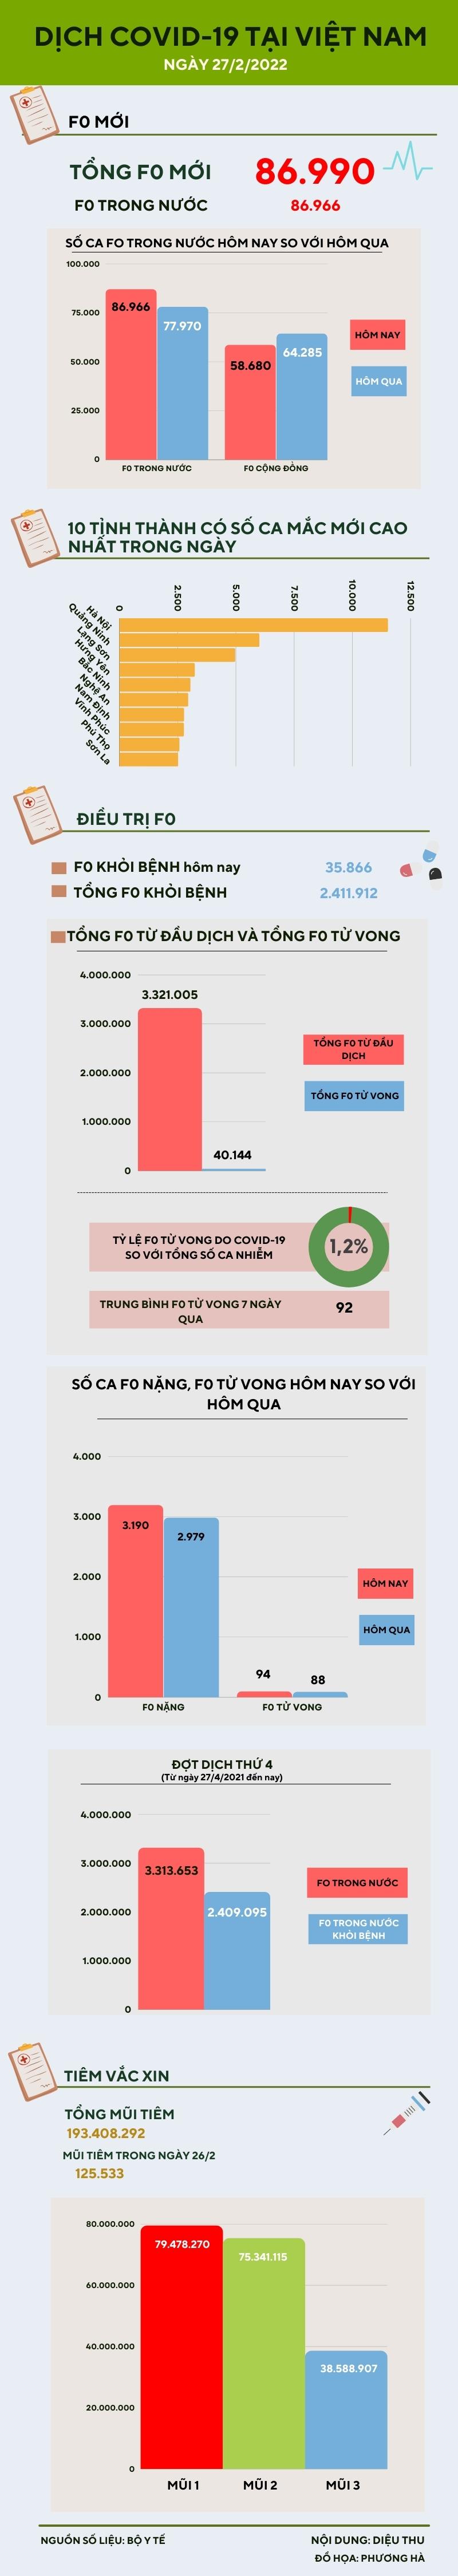 Ngày 27/2: Thêm 86.966 ca COVID-19 trong nước, riêng Hà Nội hơn 11.500 ca - 1